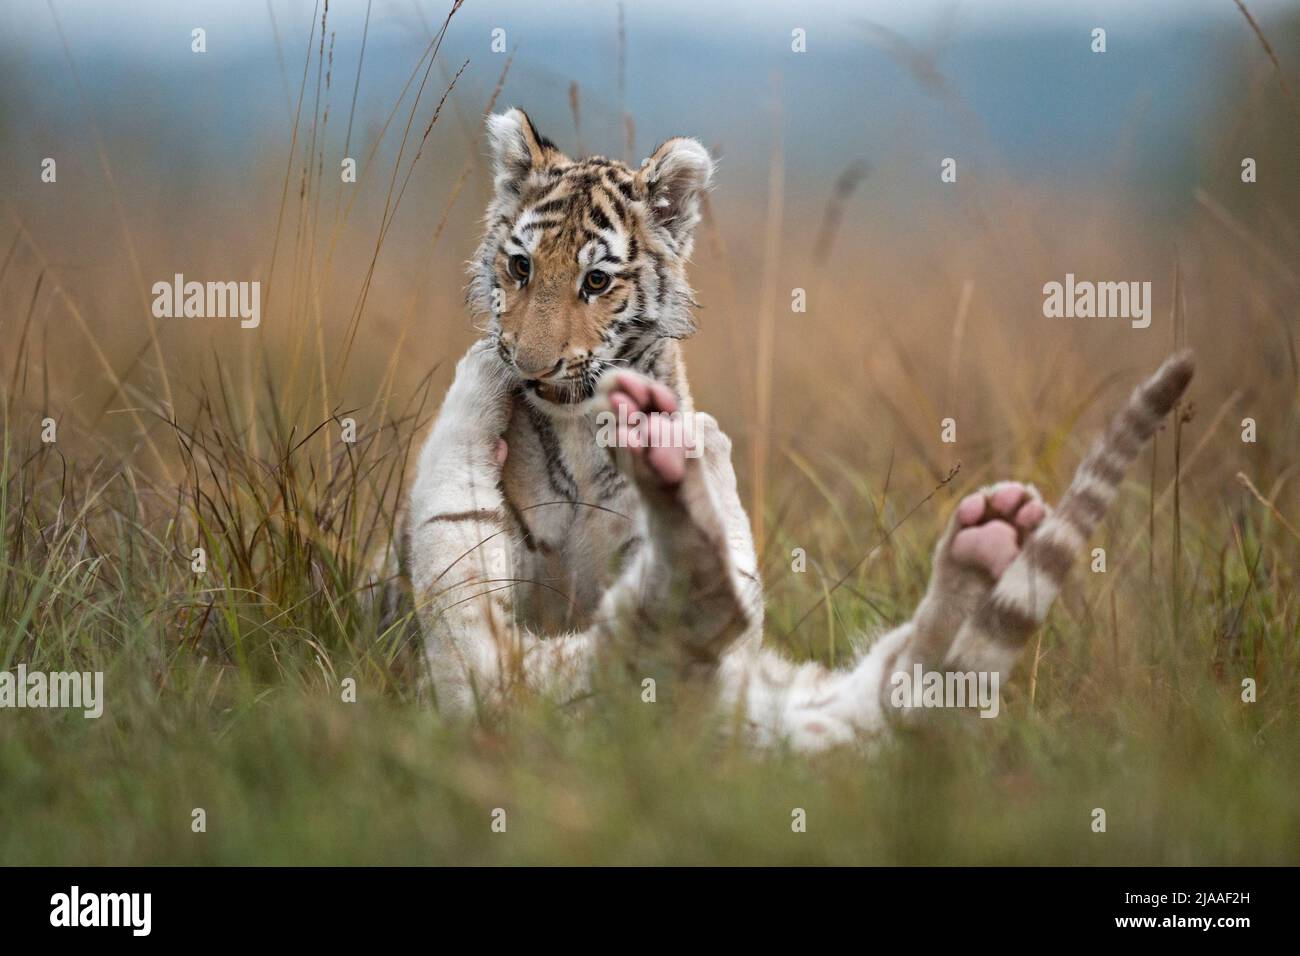 Royal Bengal Tigers / Koenigstiger ( Panthera tigris ), junge Geschwister, spielen, ringen, tobern im hohen Gras, typische natürliche Umgebung, lustig Stockfoto